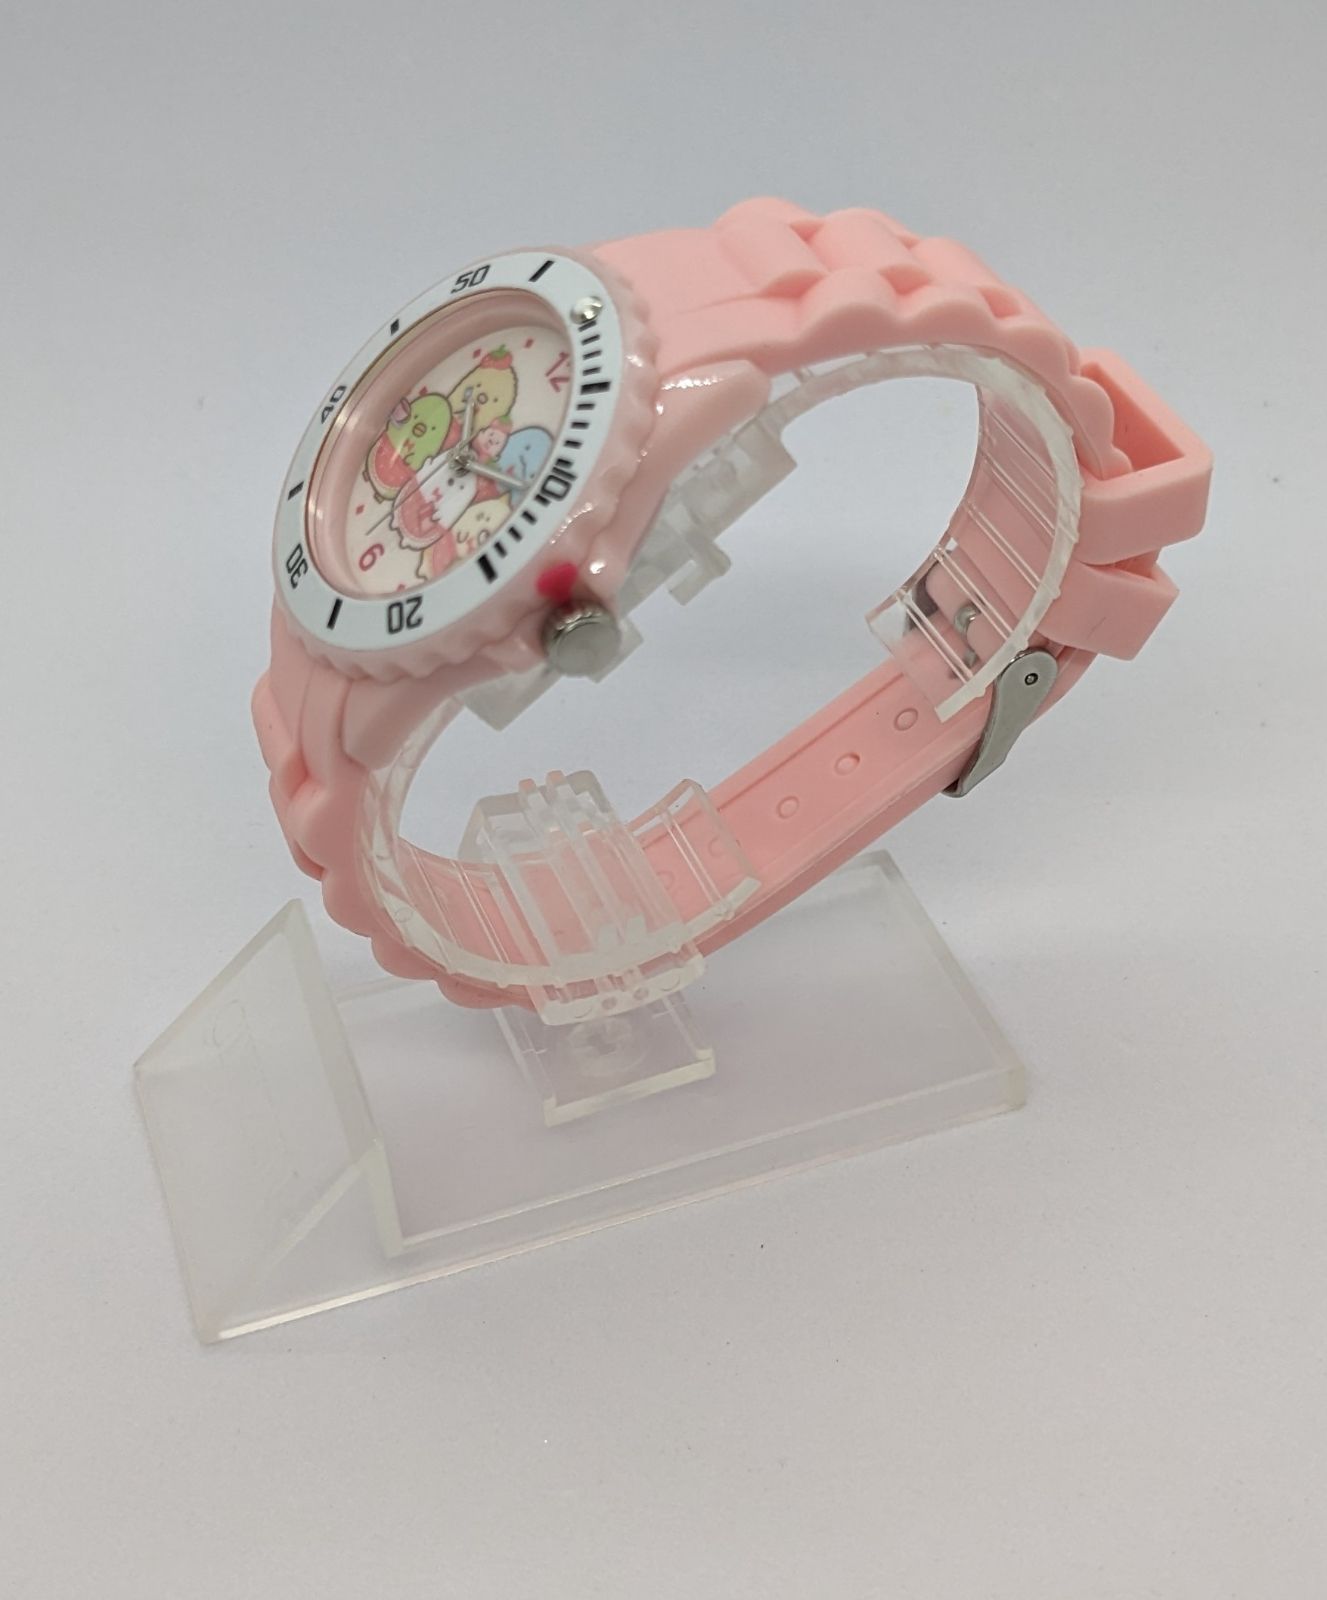 [アリアス] 腕時計 すみっコぐらし アナログ 防水 シリコンベルト 喫茶すみっコでいちごフェアー WW21049SXSG ガールズ ピンク